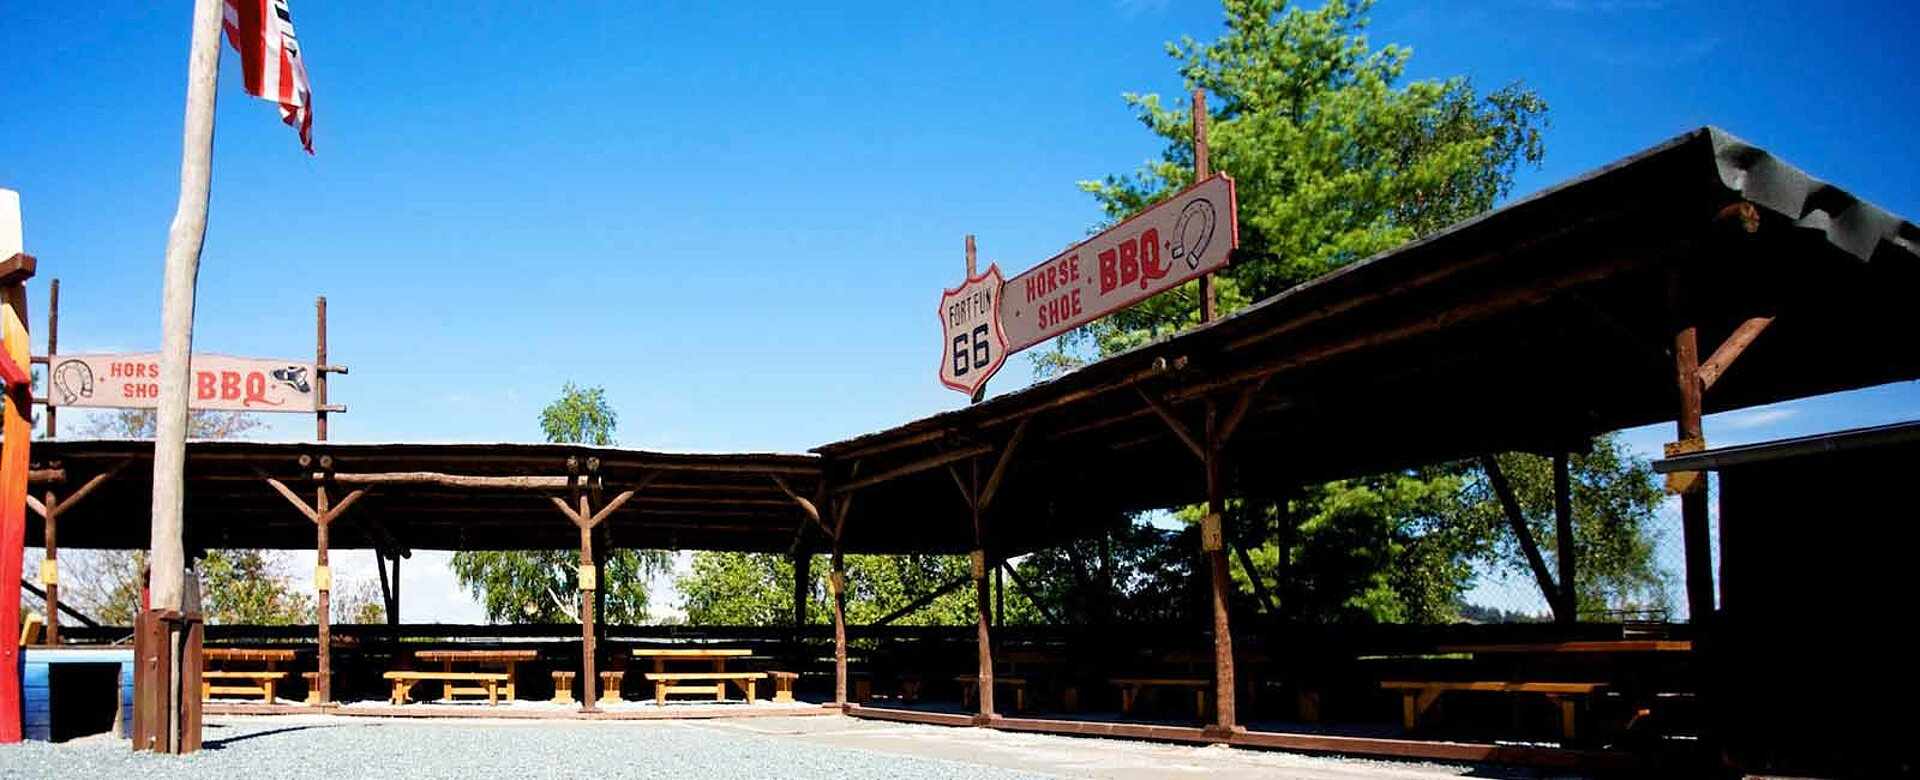 Der Platz zum Grillen und Outdoor Party feiern im Freizeitpark heißt Horse Shoe BBQ.